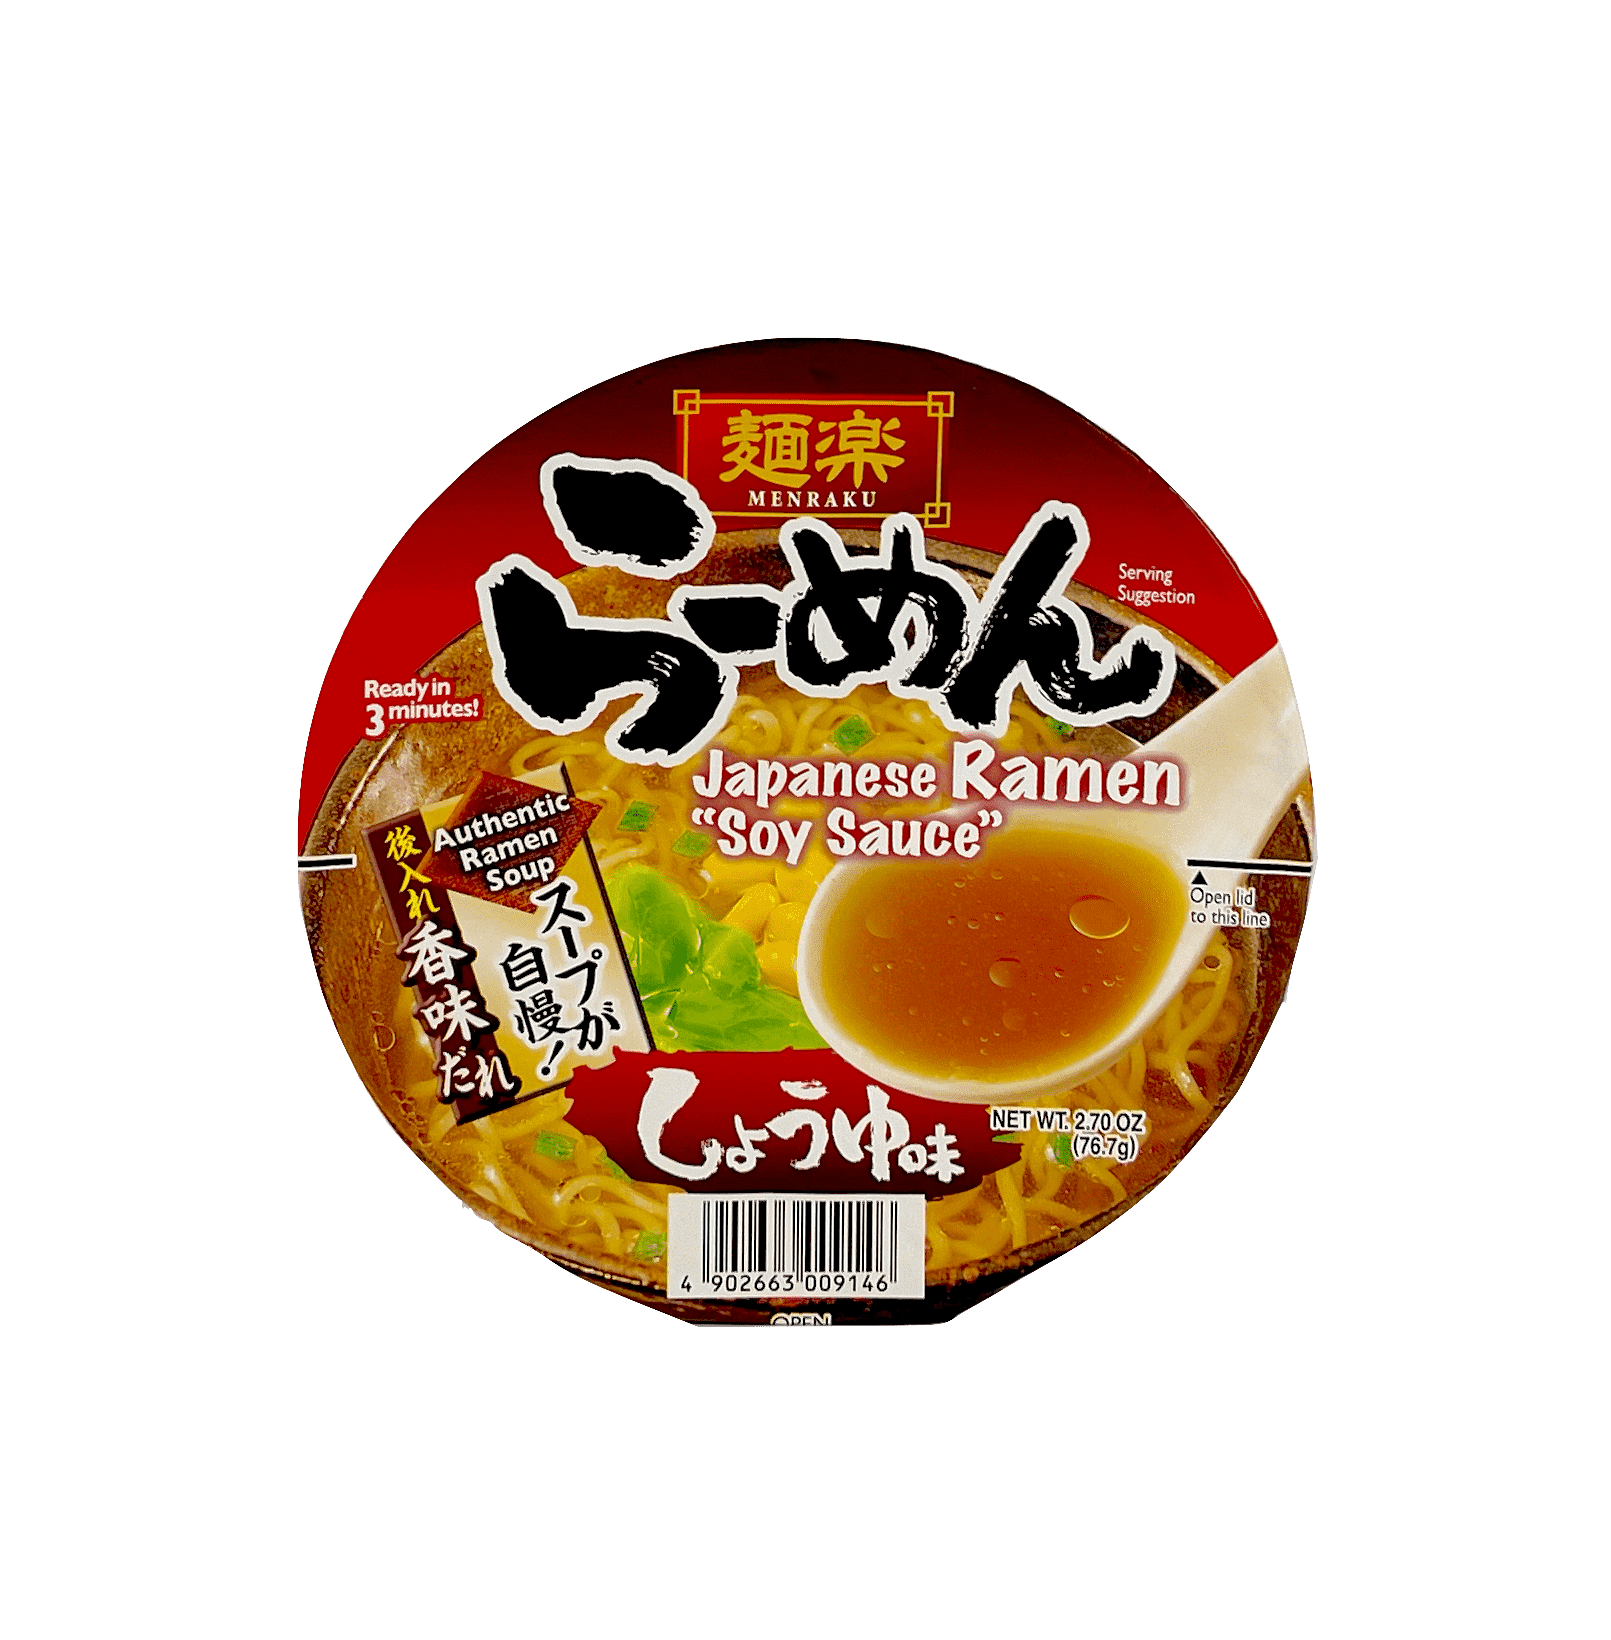 方便碗面 酱油风味 76.7g Hikari Menraku 日本